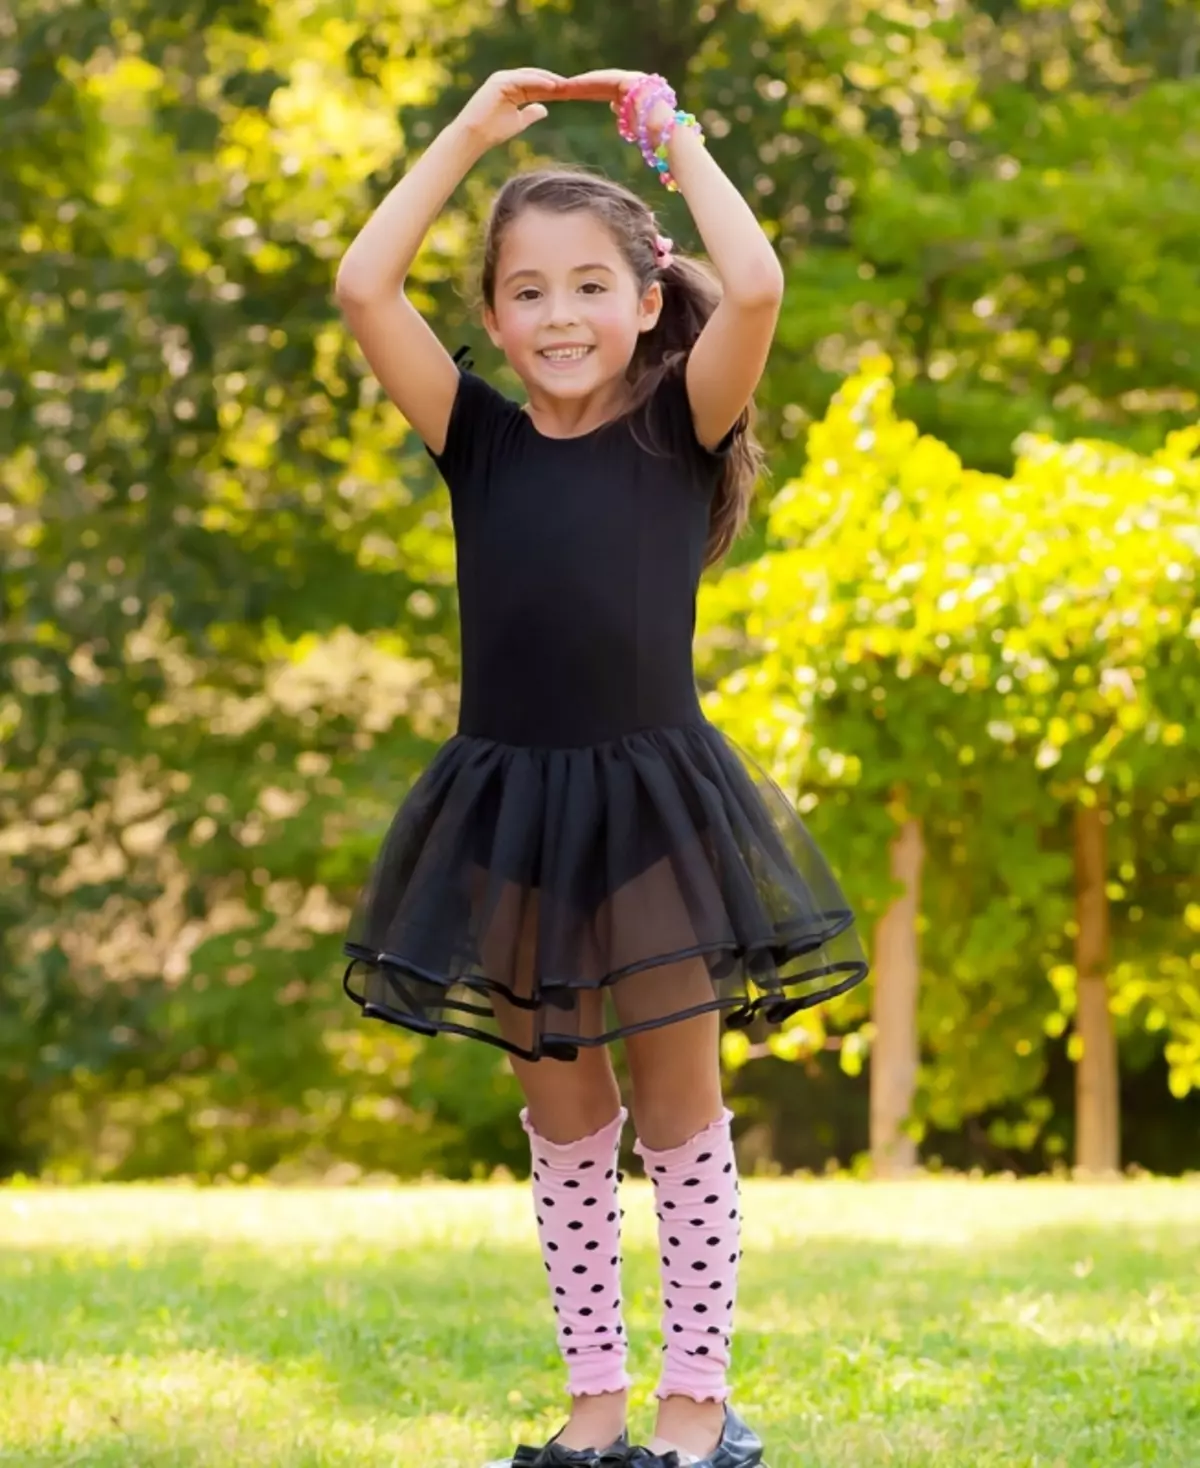 Swimsuit infantil para bailar con saia (45 fotos): Modelos de baile para nenas 13495_45